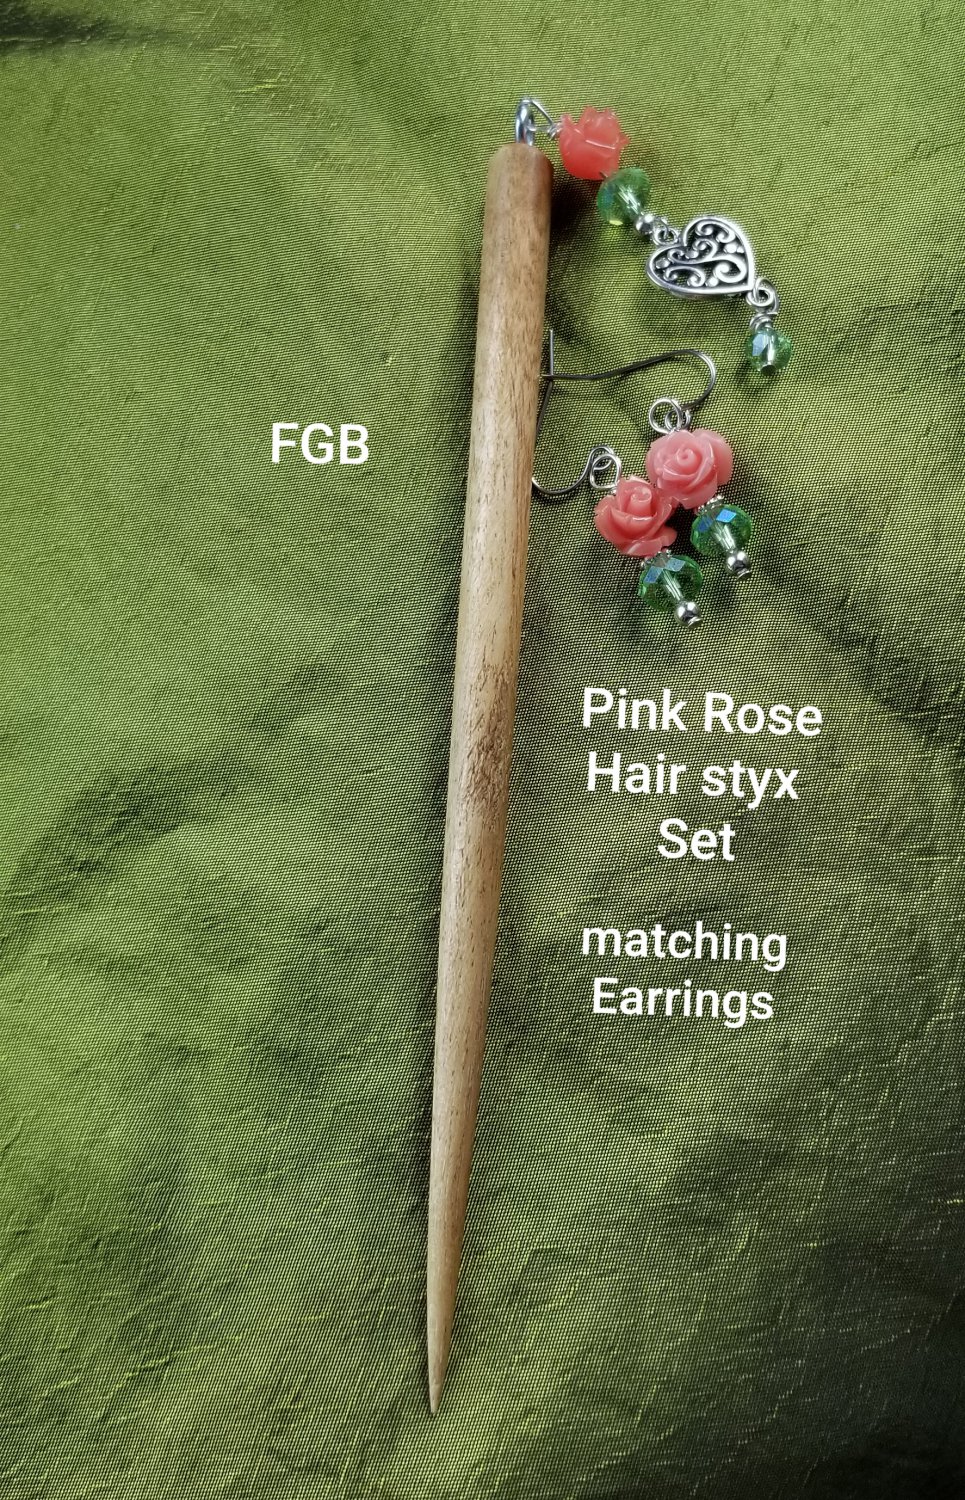 Pink rose hair styx set